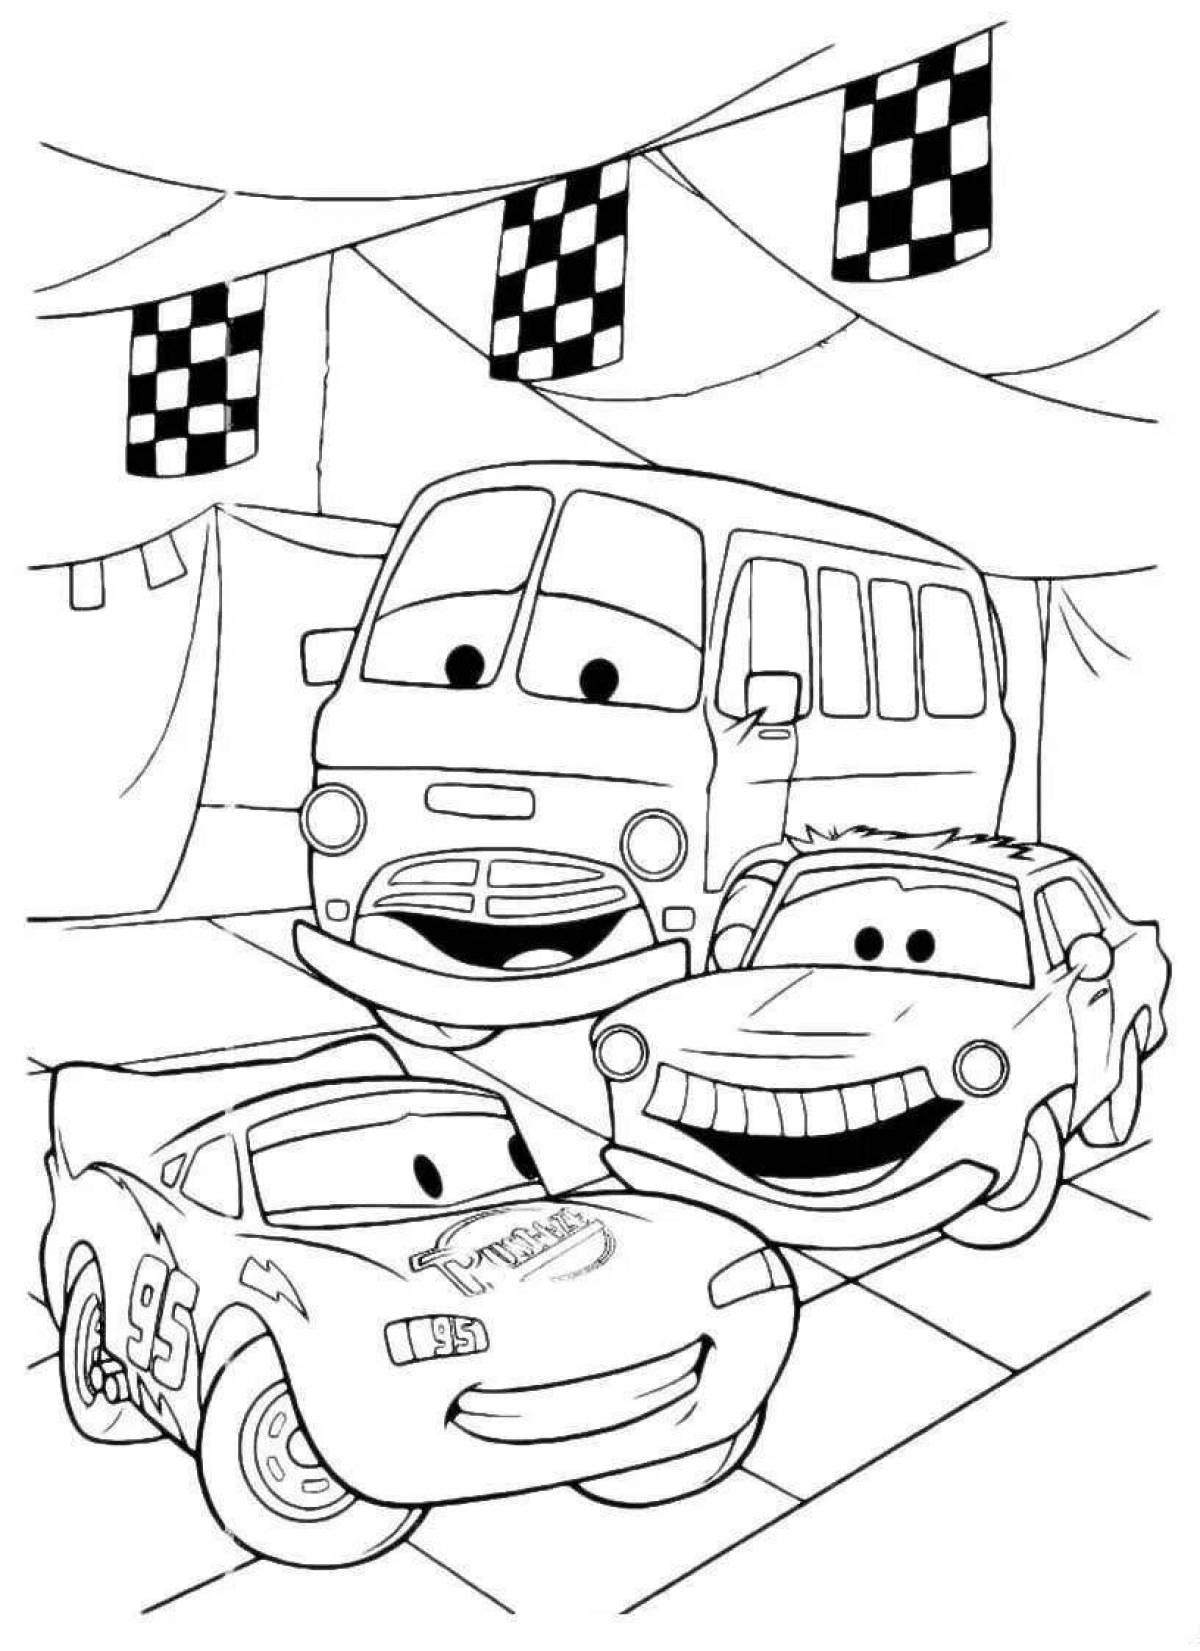 Cute cartoon cars coloring book